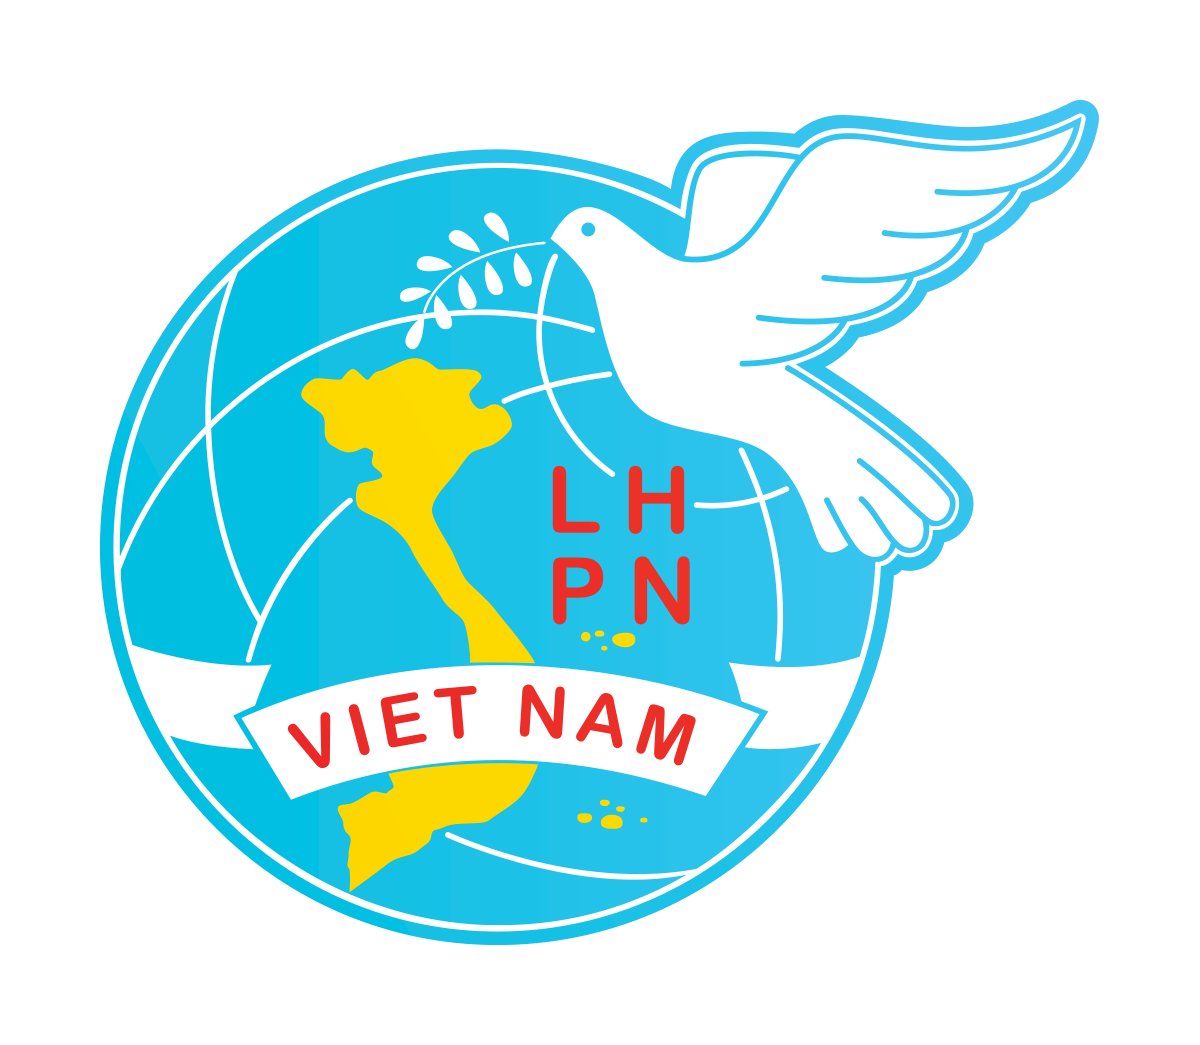 Cách tải và sử dụng logo Hội Liên Hiệp Phụ Nữ Việt Nam file vector?
